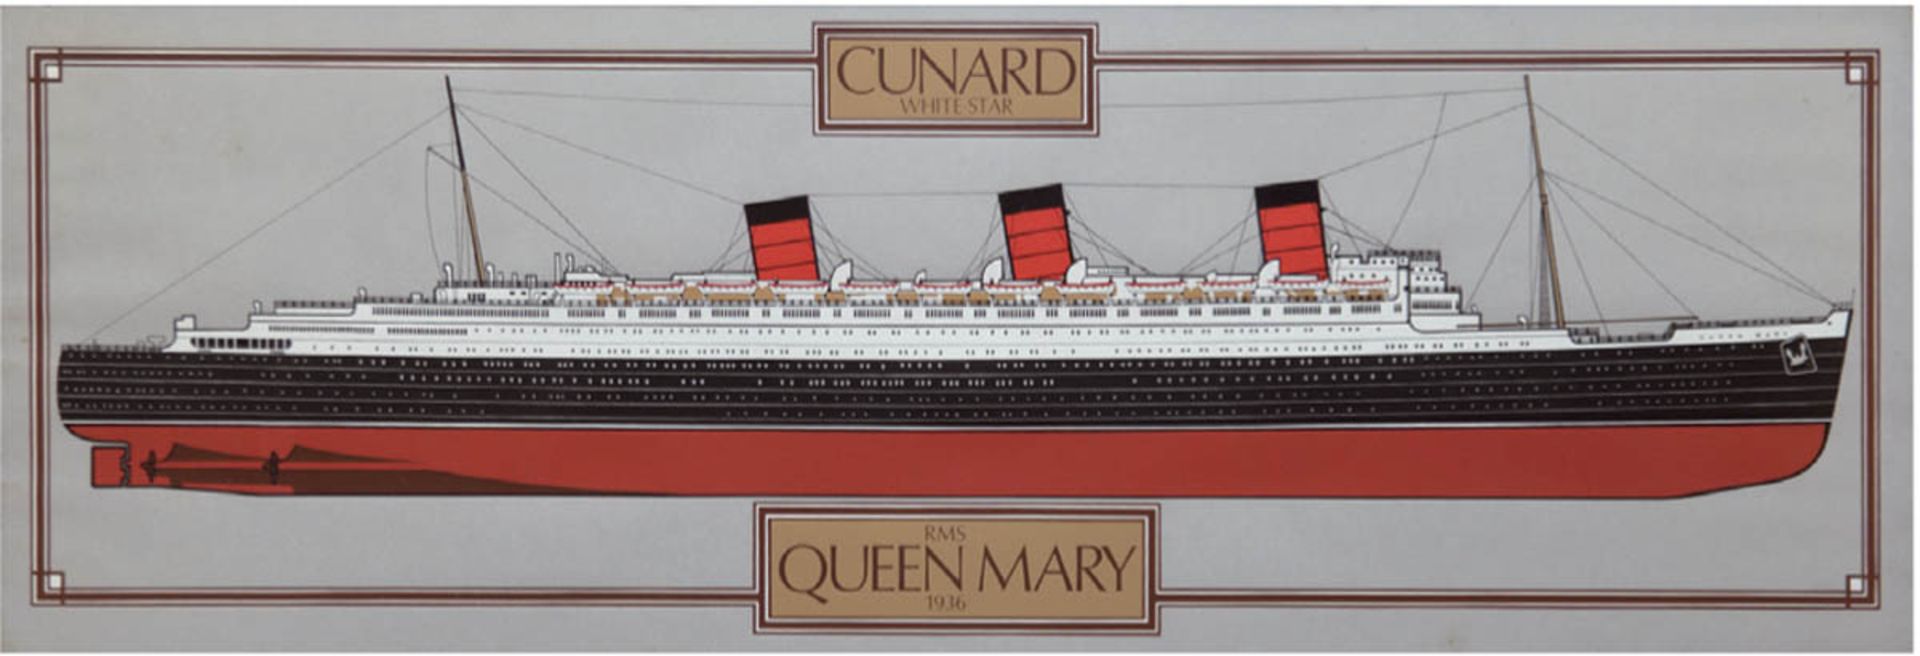 "RMS Queen Mary 1936", Plakat der Cunard White Star Line, 34x100 cm, hinter Glas im Rahmen